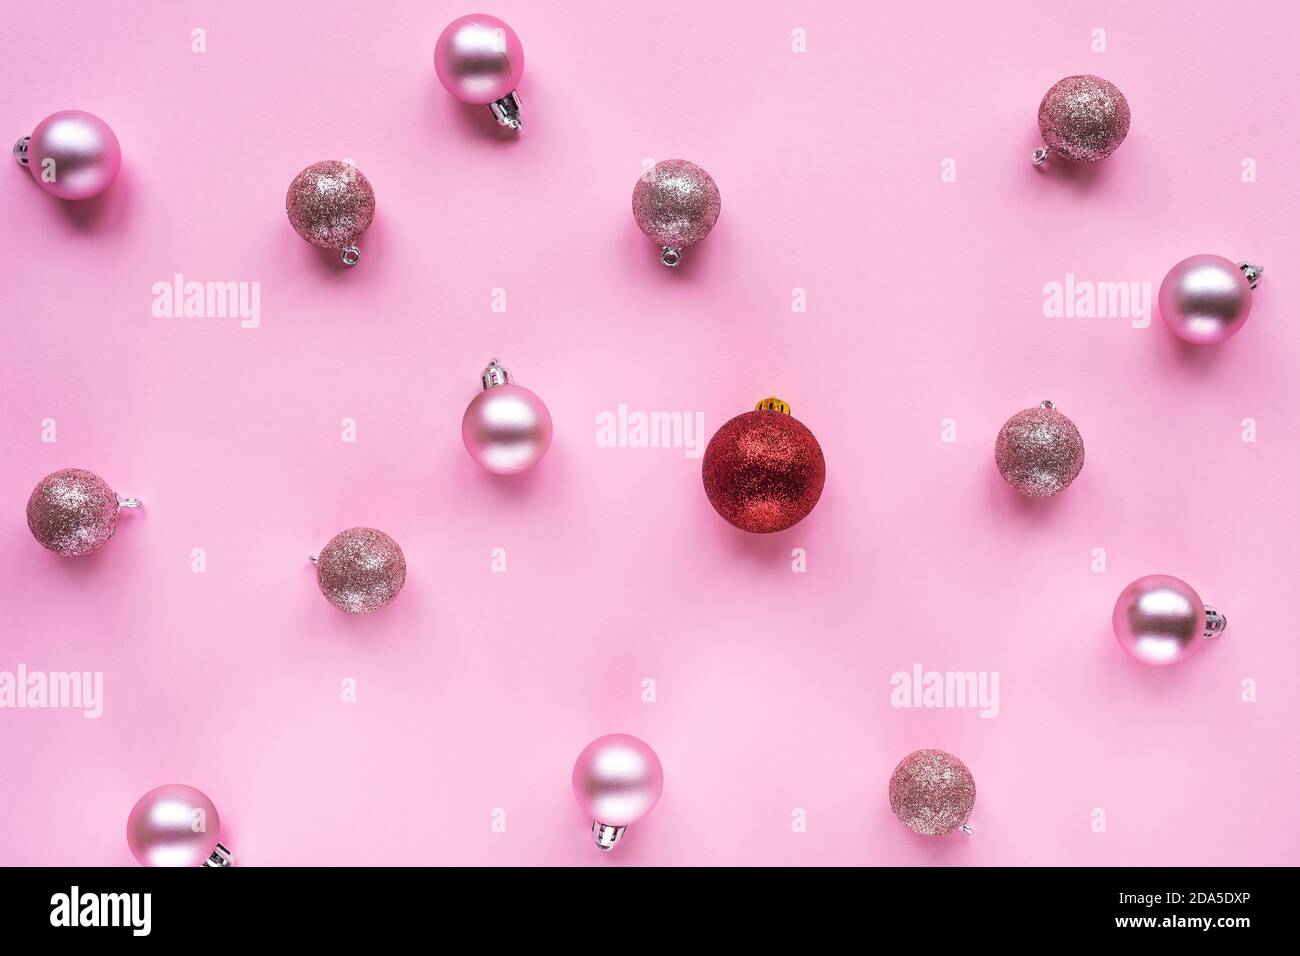 Une boule de noël rouge et beaucoup de boules roses sur la table. Concept de Noël ou de nouvel an. Différent, non standard. Vue de dessus Banque D'Images